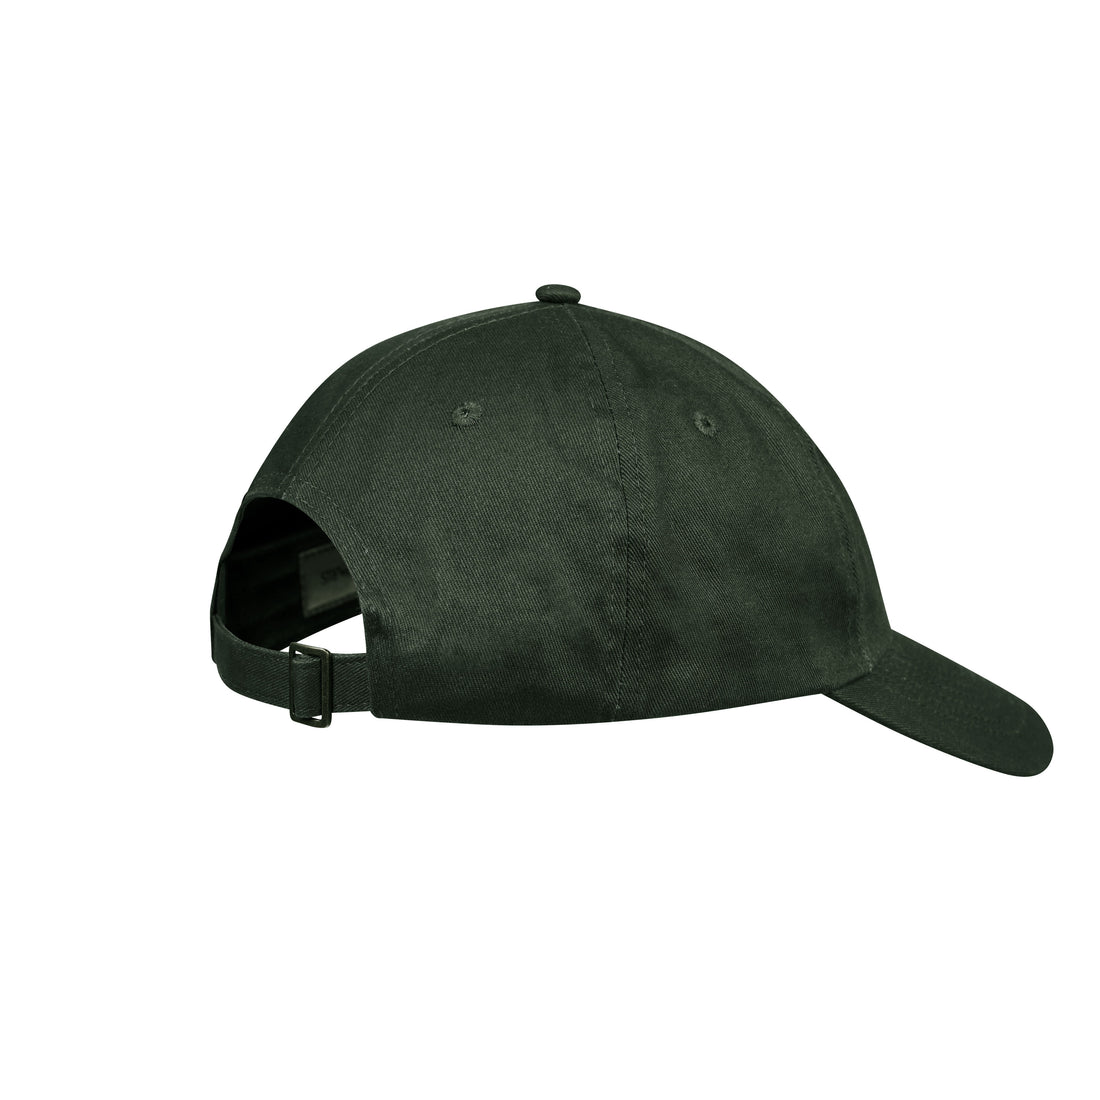 La casquette monogramme verte